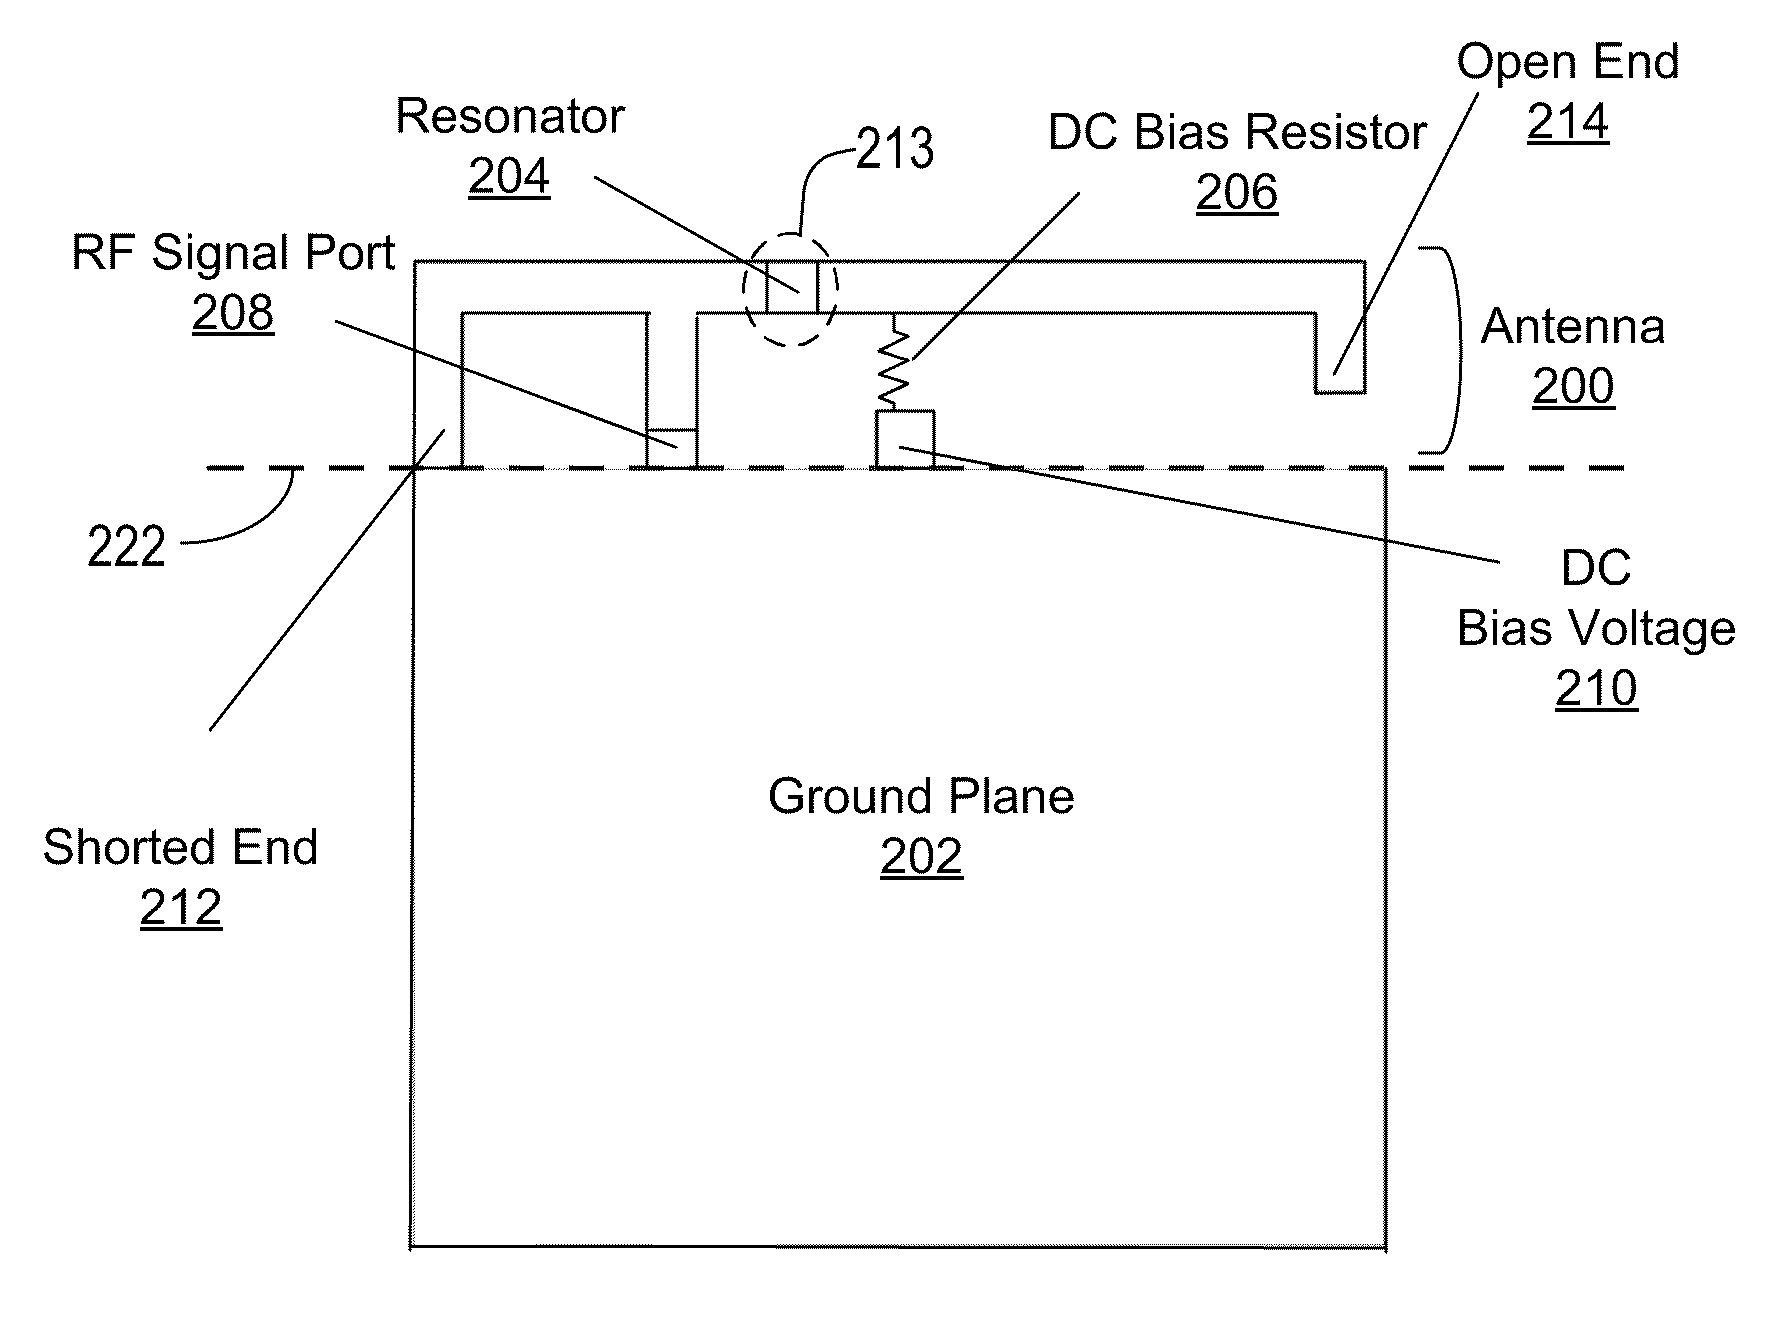 Tunable dual-band antenna using lc resonator